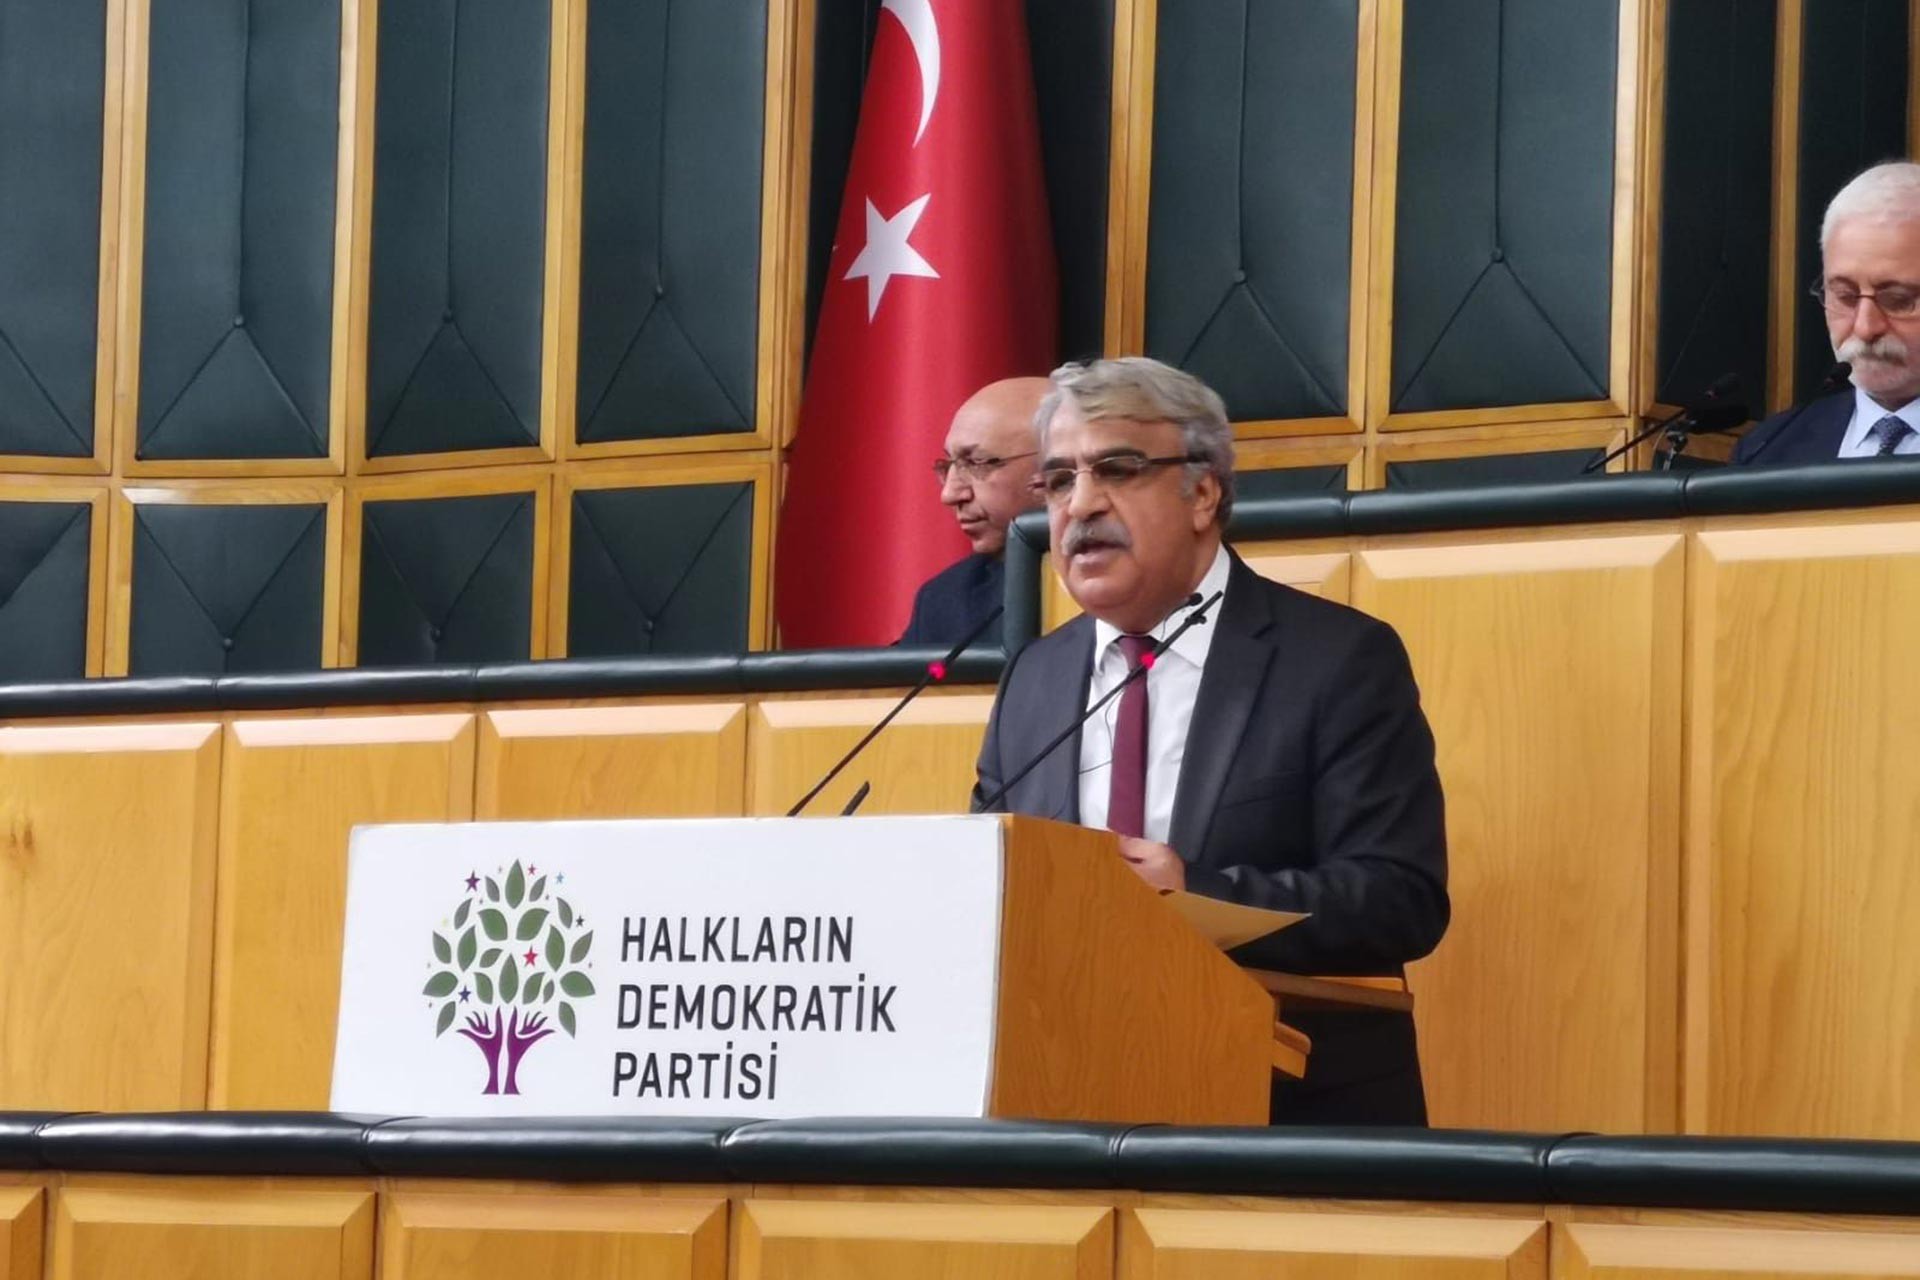 HDP Eş Genel Başkanı Sancar’dan Gara açıklaması:  “Bu bir katliamdır,  kınamak yetmez hakikati ortaya çıkarmalıyız”